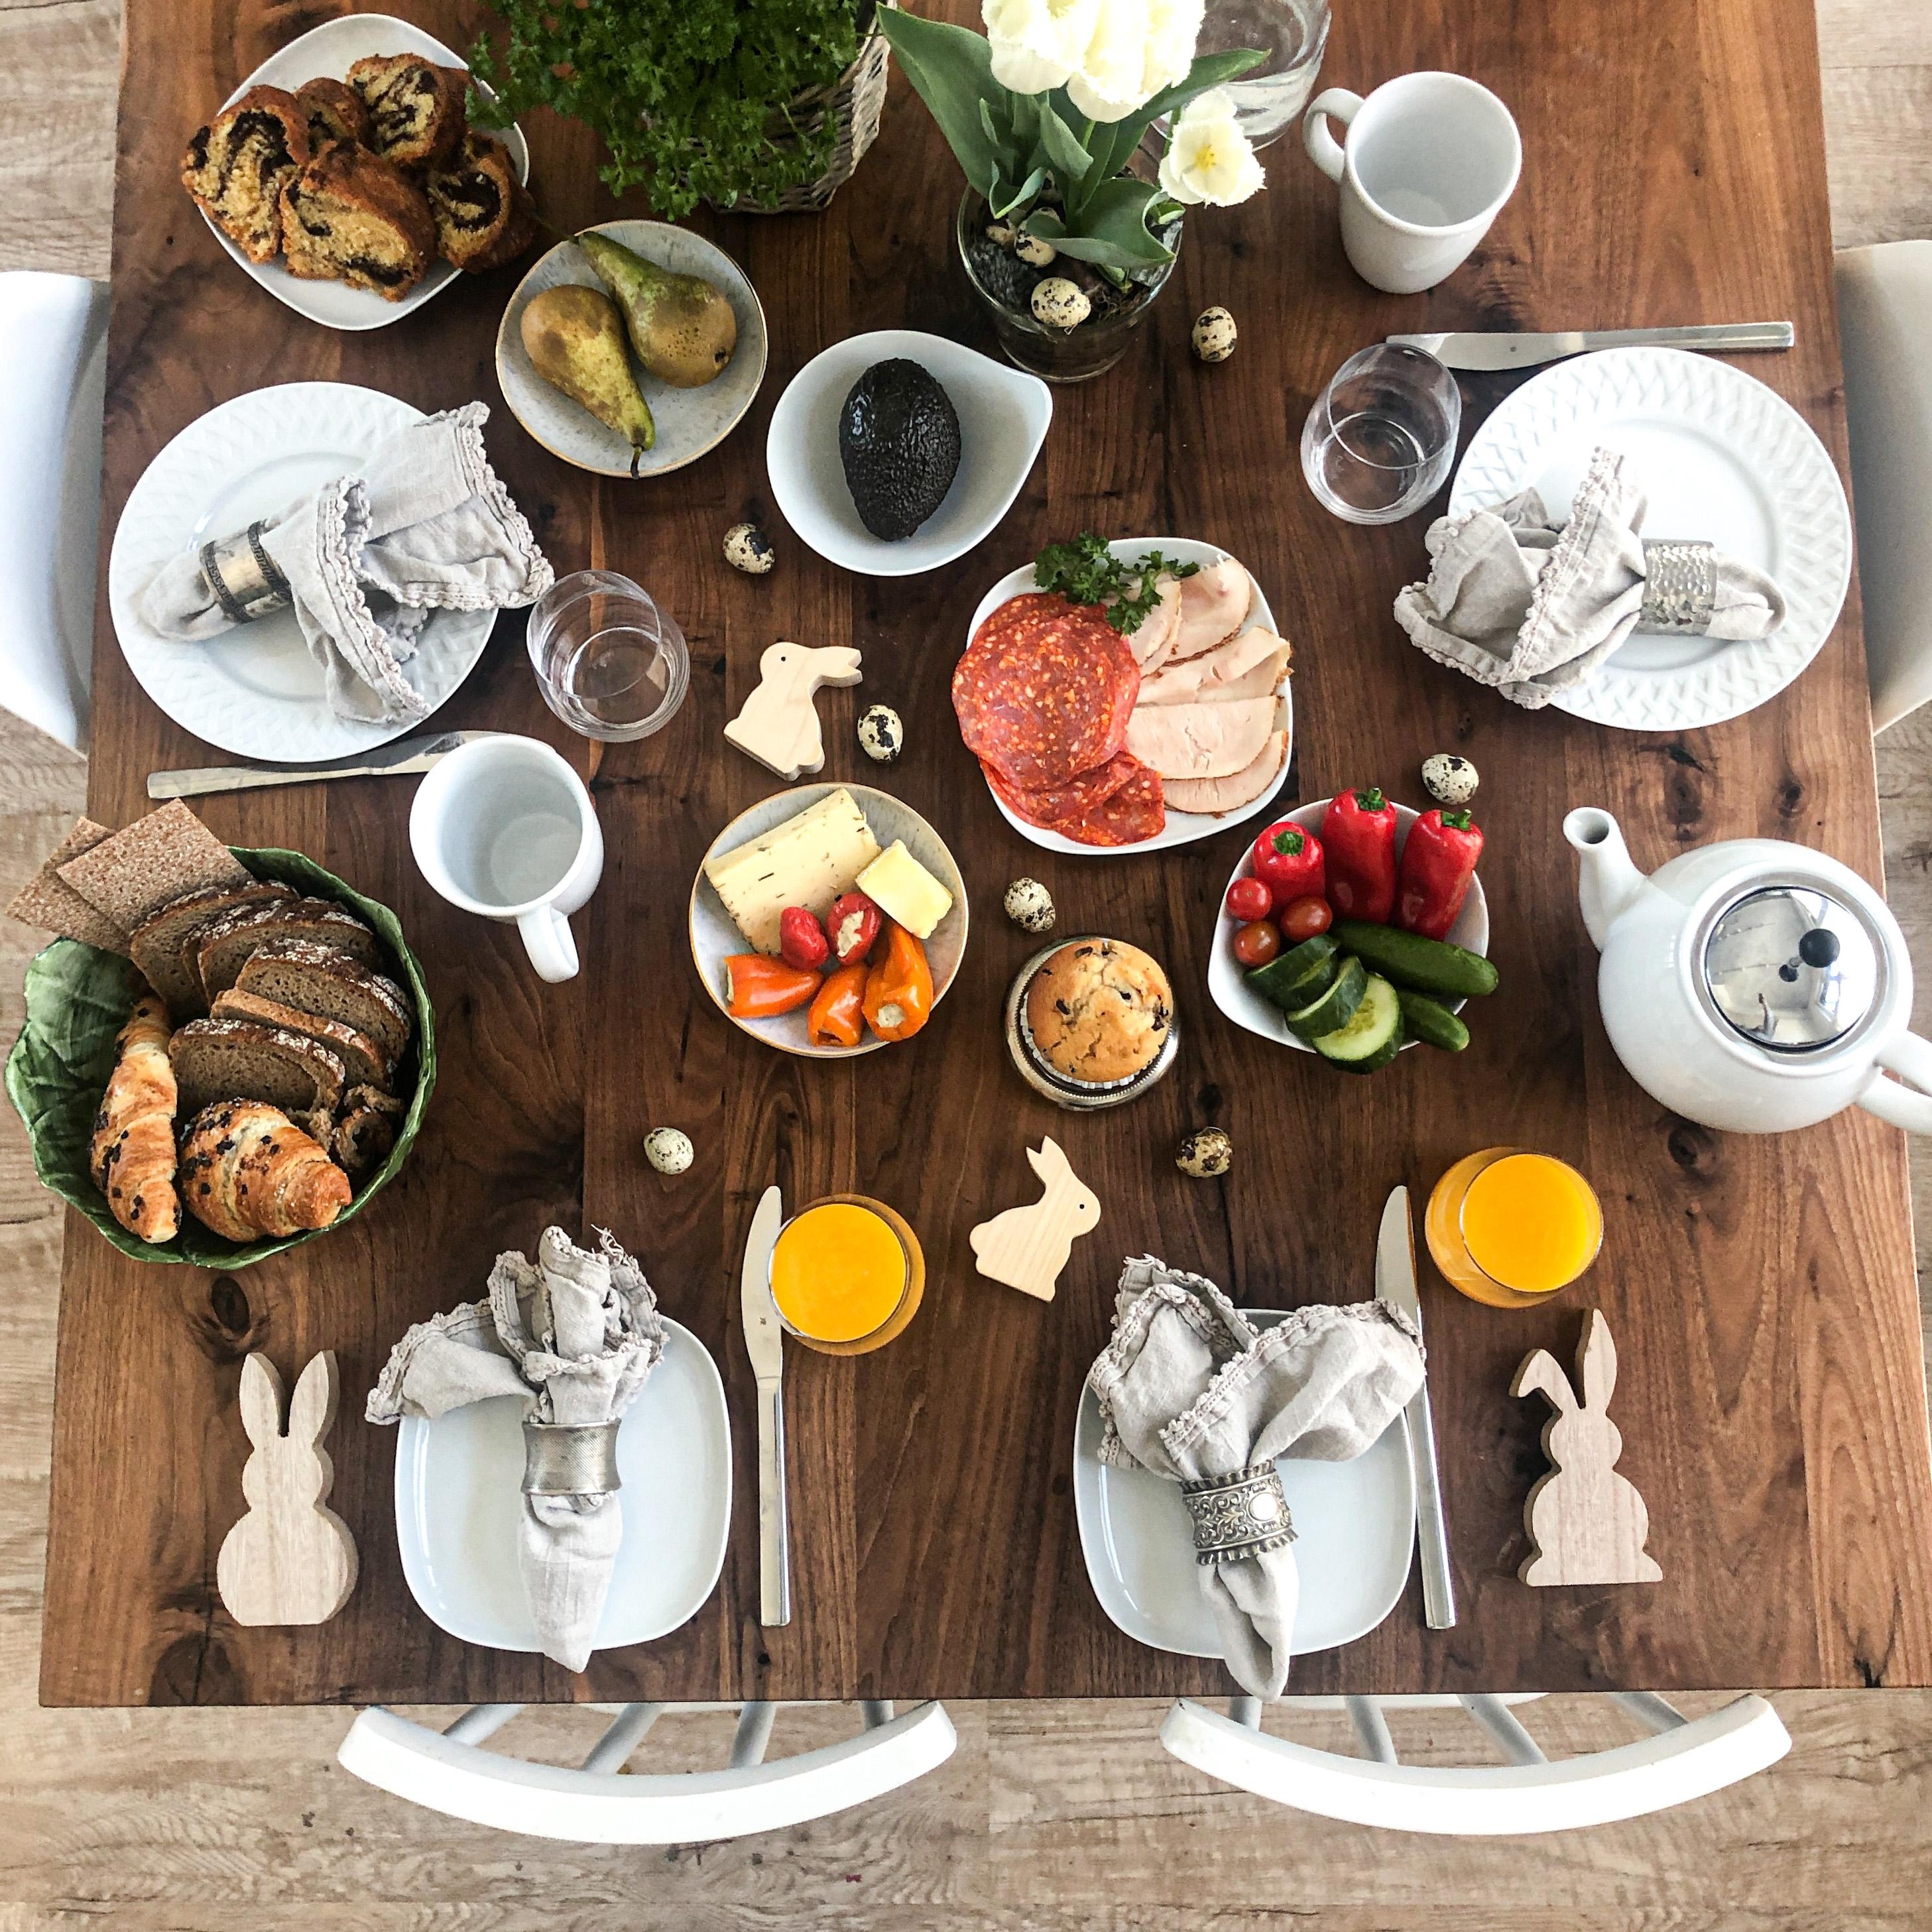 Frühstück ist fertig  #frühstück #familienzeit #brekkie #holztisch #januamöbel